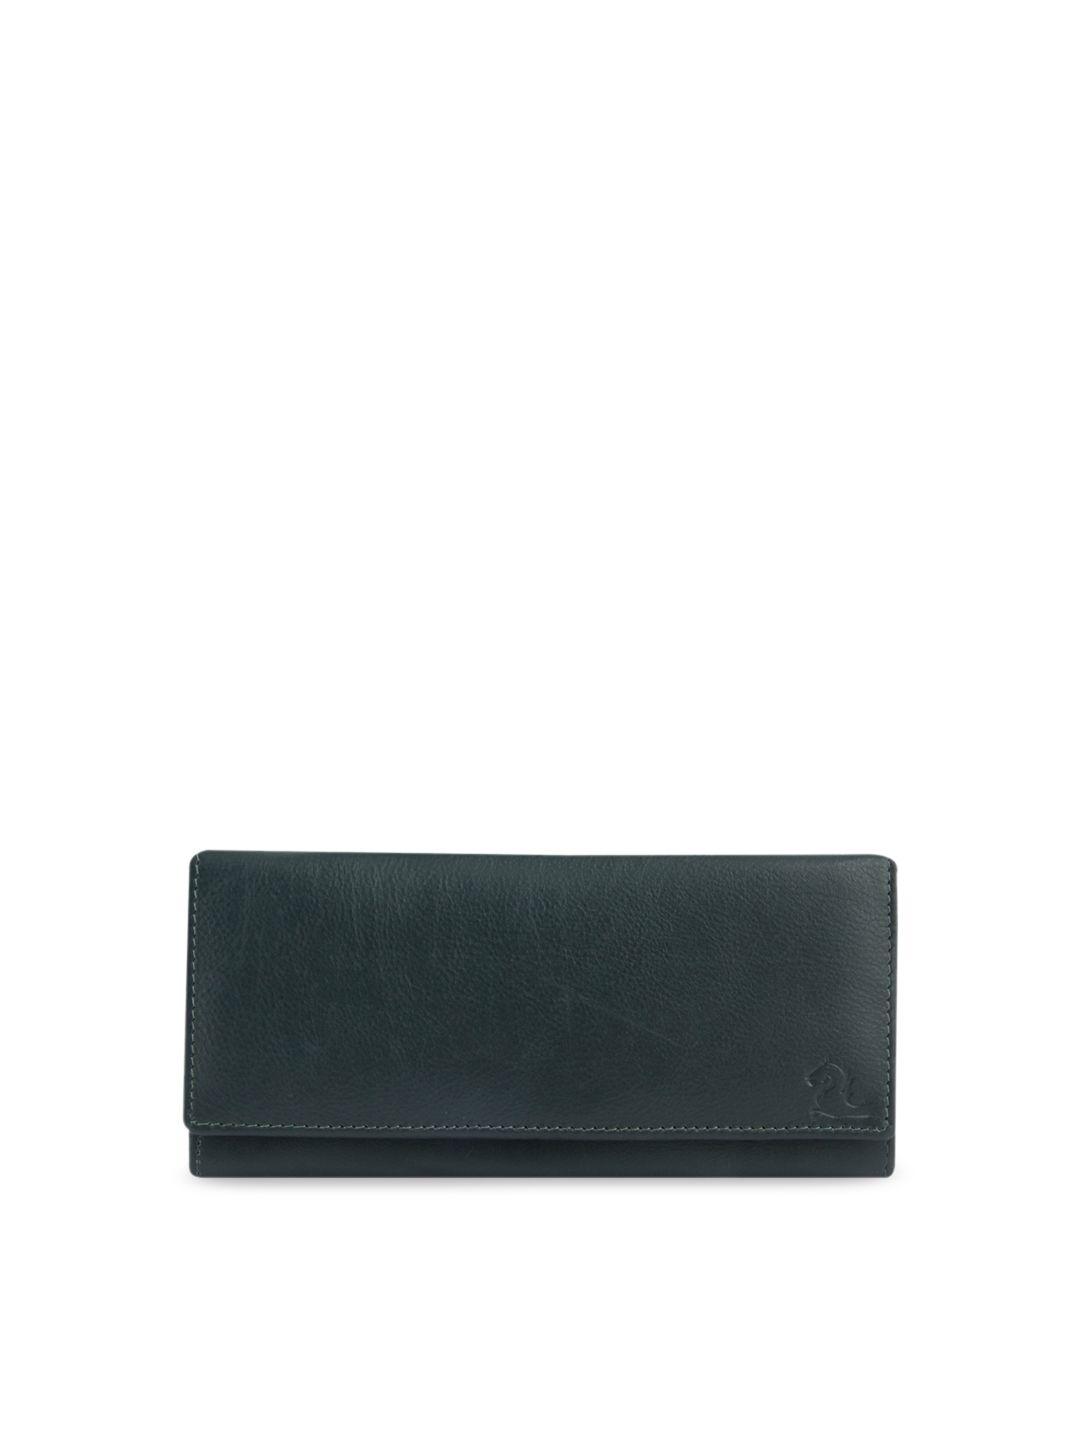 kara olive green solid envelope leather clutch